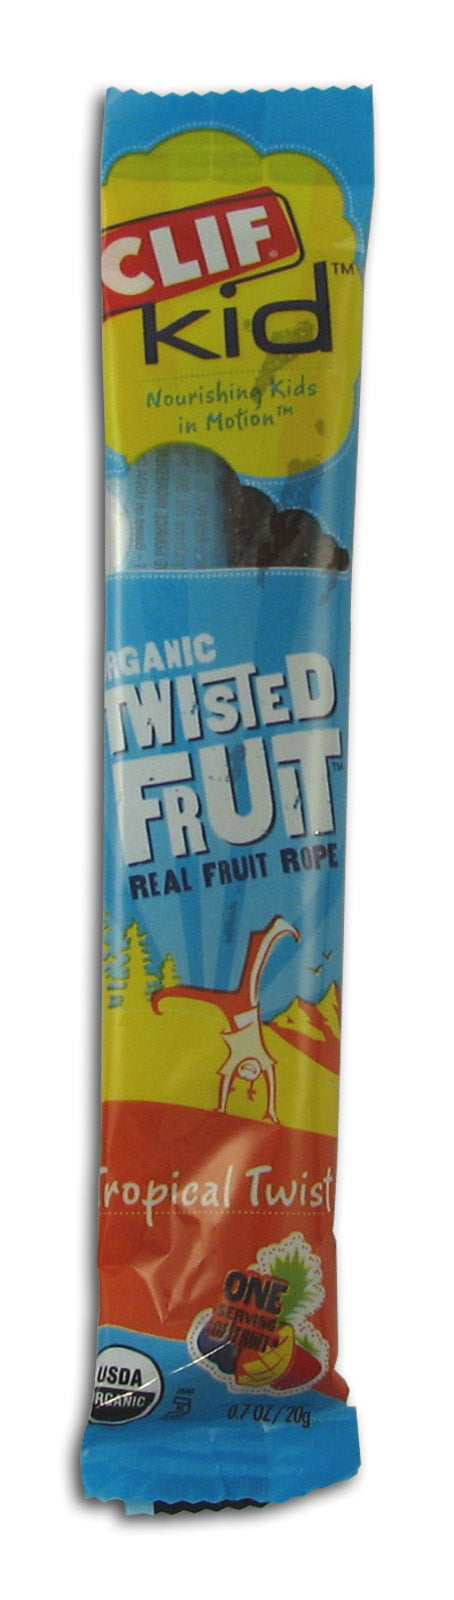 Twisted Fruit, Tropical Twist, Organ